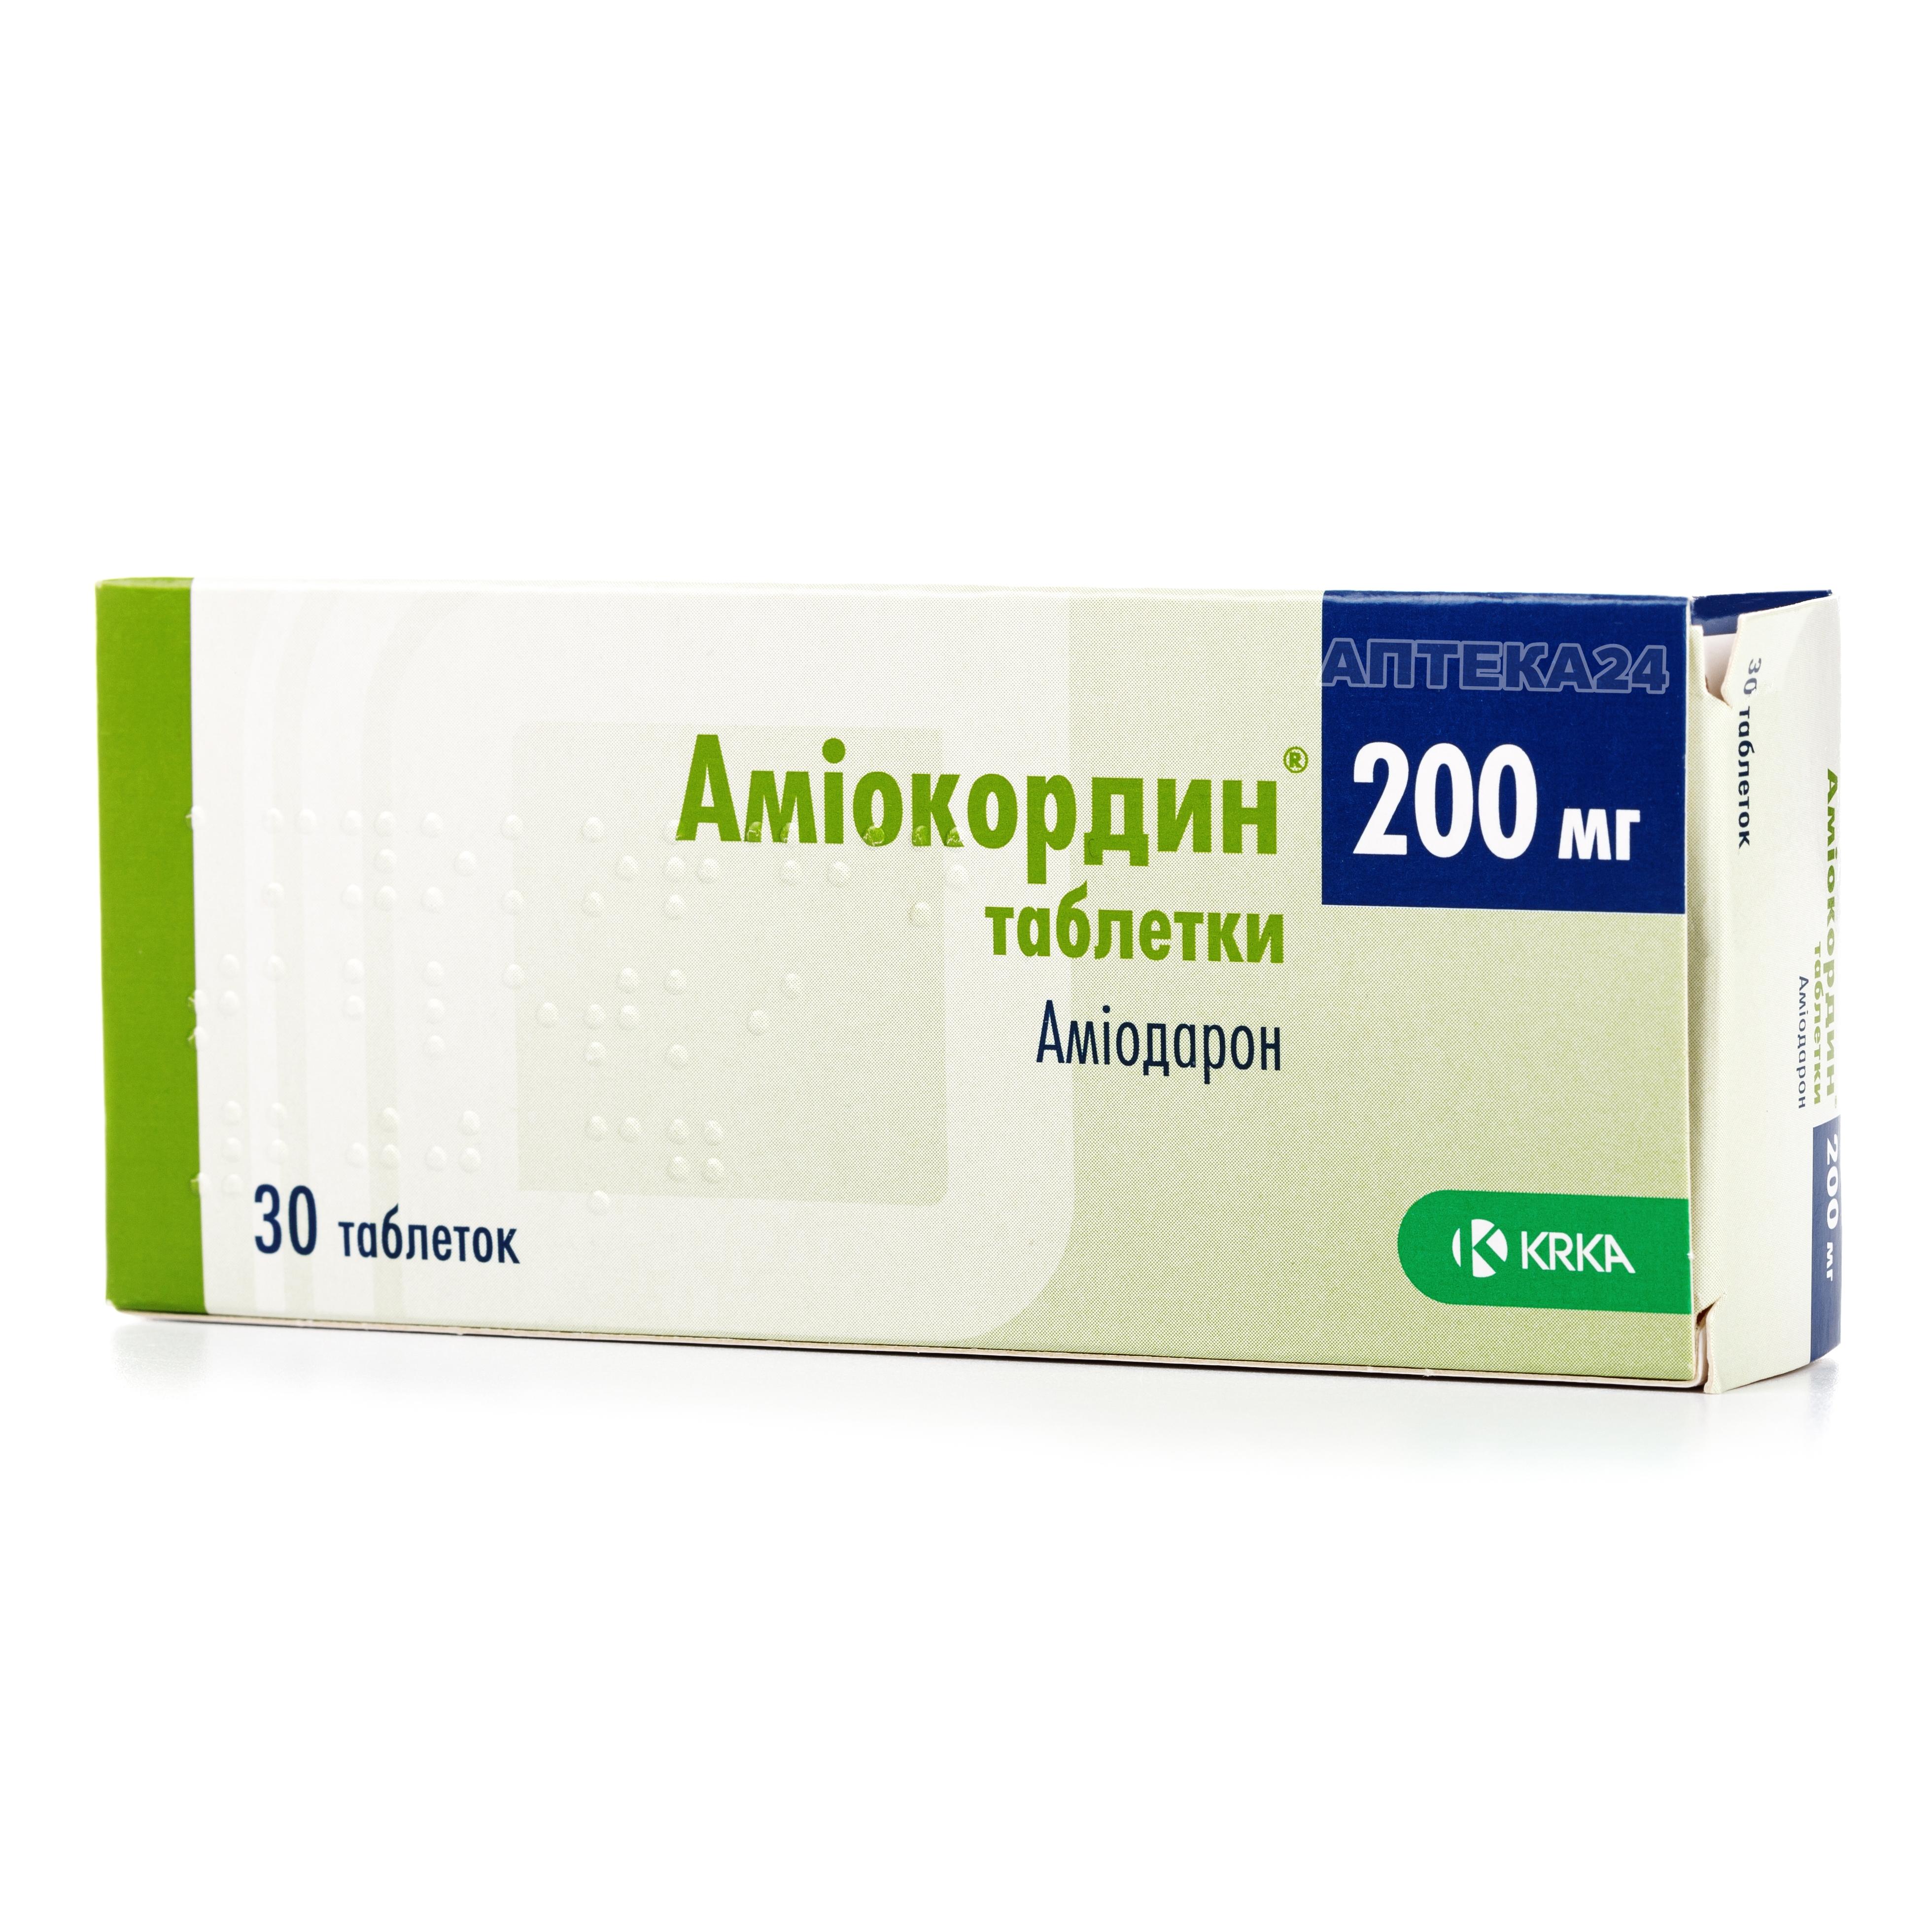 Амиокордин таблетки по 200 мг, 30 шт.: інструкція, ціна, відгуки .